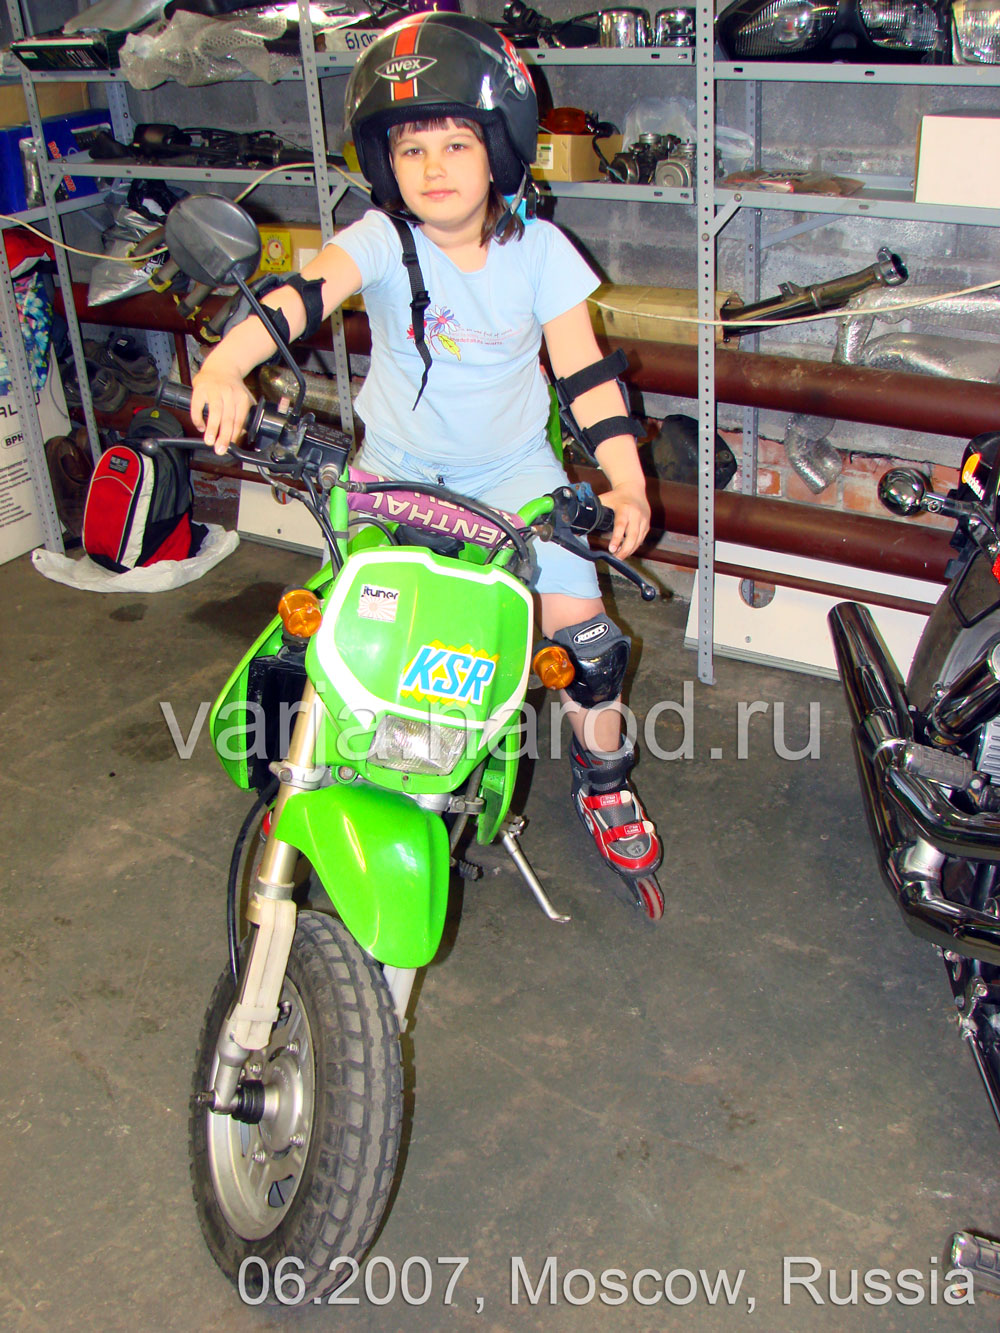 Девочка на мотоцикле KSR